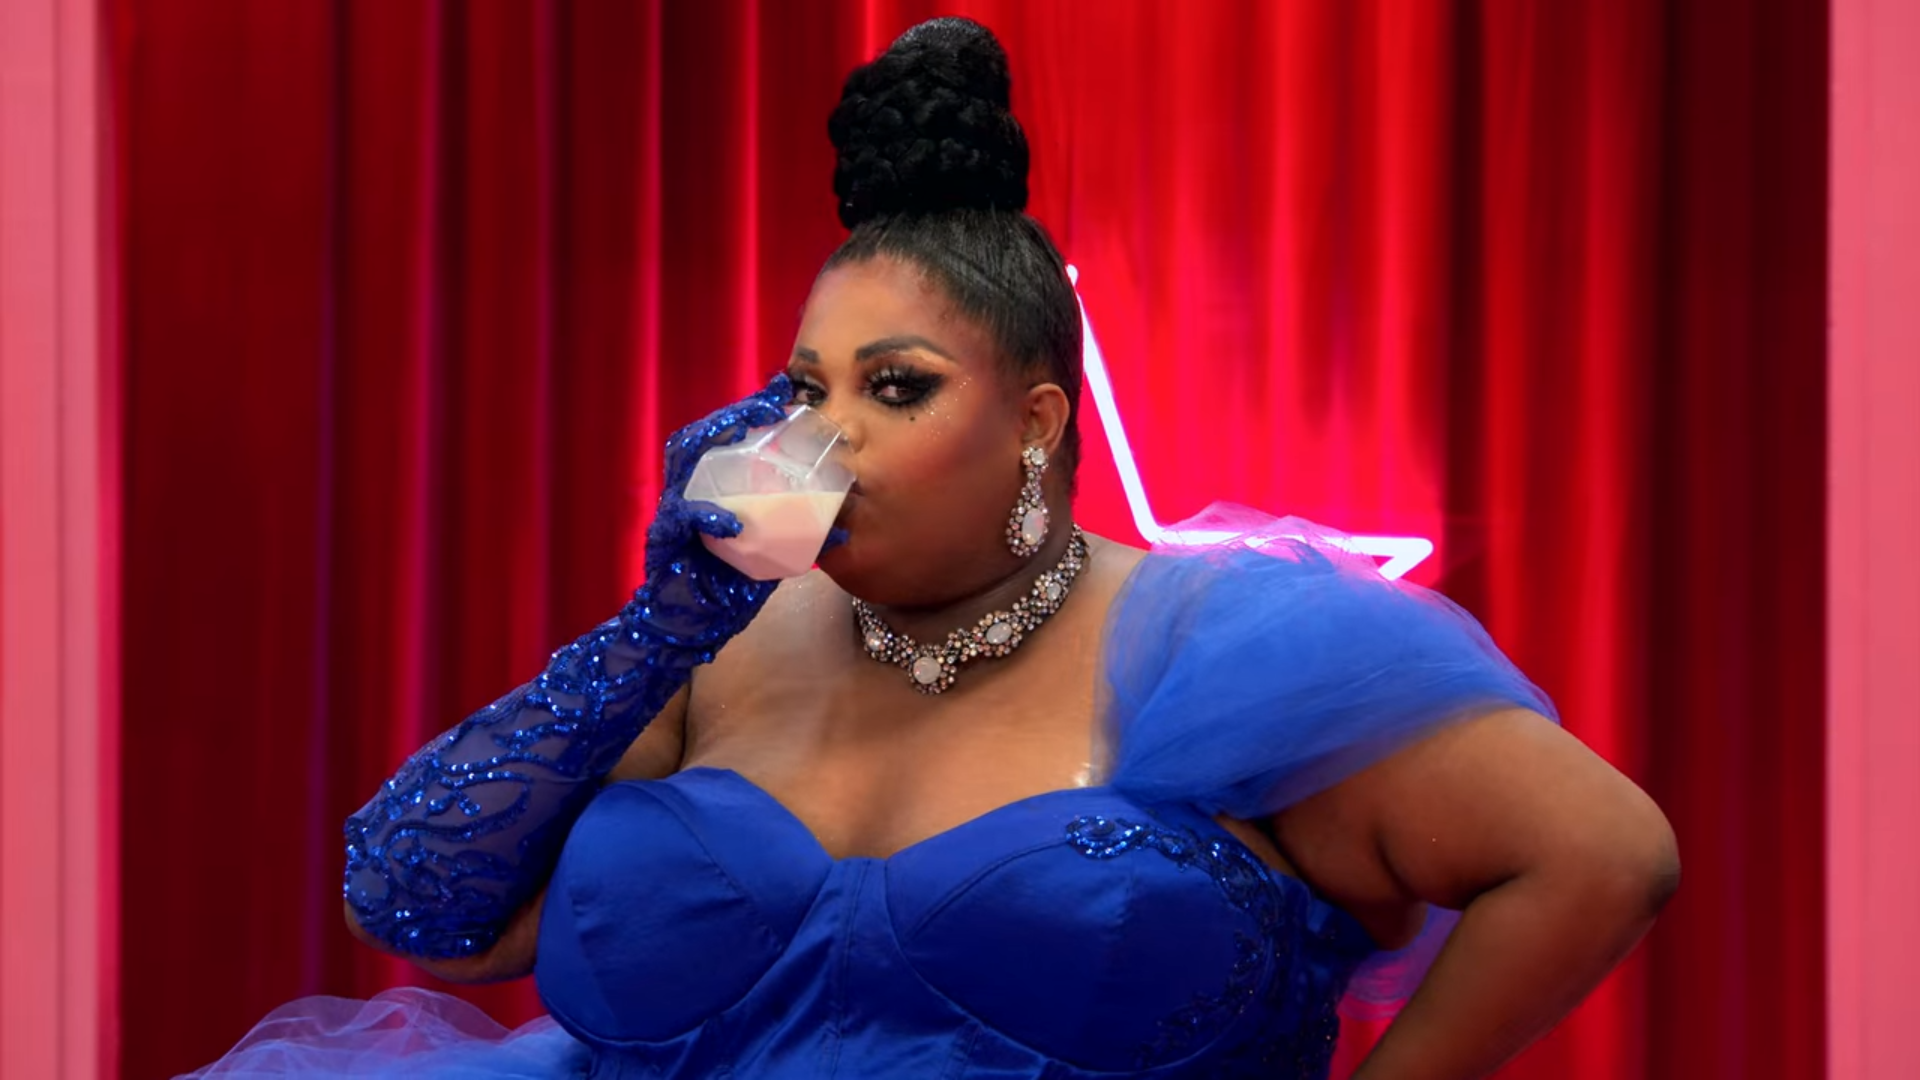 Cena do reality show All Stars 6, mostra a entrada de Silky Nutmeg Ganache, uma drag queen negra e gorda, que usa um vestido azul, rabo de cavalo alto e bebe um copo de leite, olhando para a câmara. Ao fundo, vemos uma estrela iluminada em um fundo vermelho.